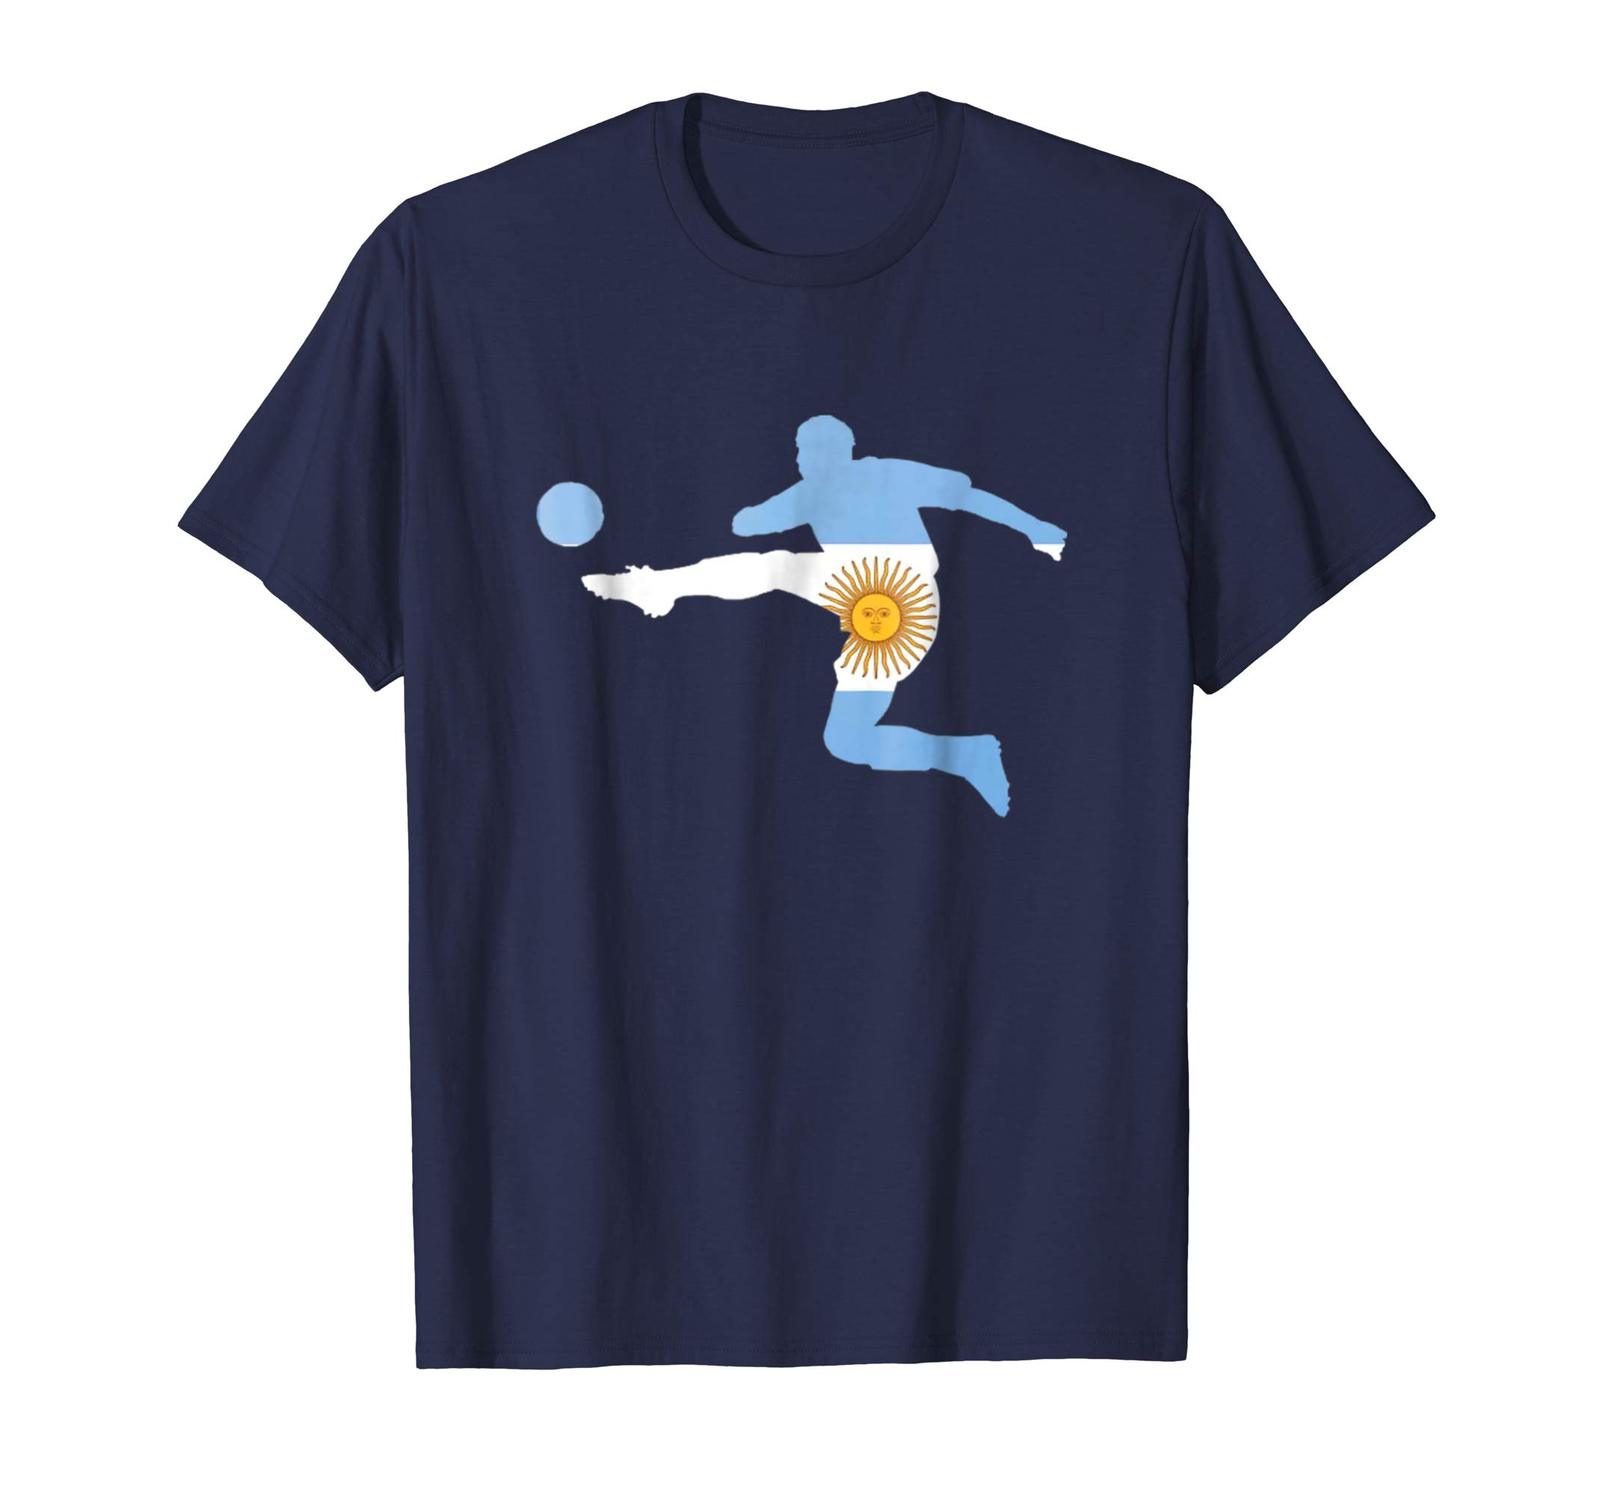 Dad Shirts - Argentina Football Cup 2018 Soccer Jersey Men Women T Shirt Men - $19.95 - $23.95